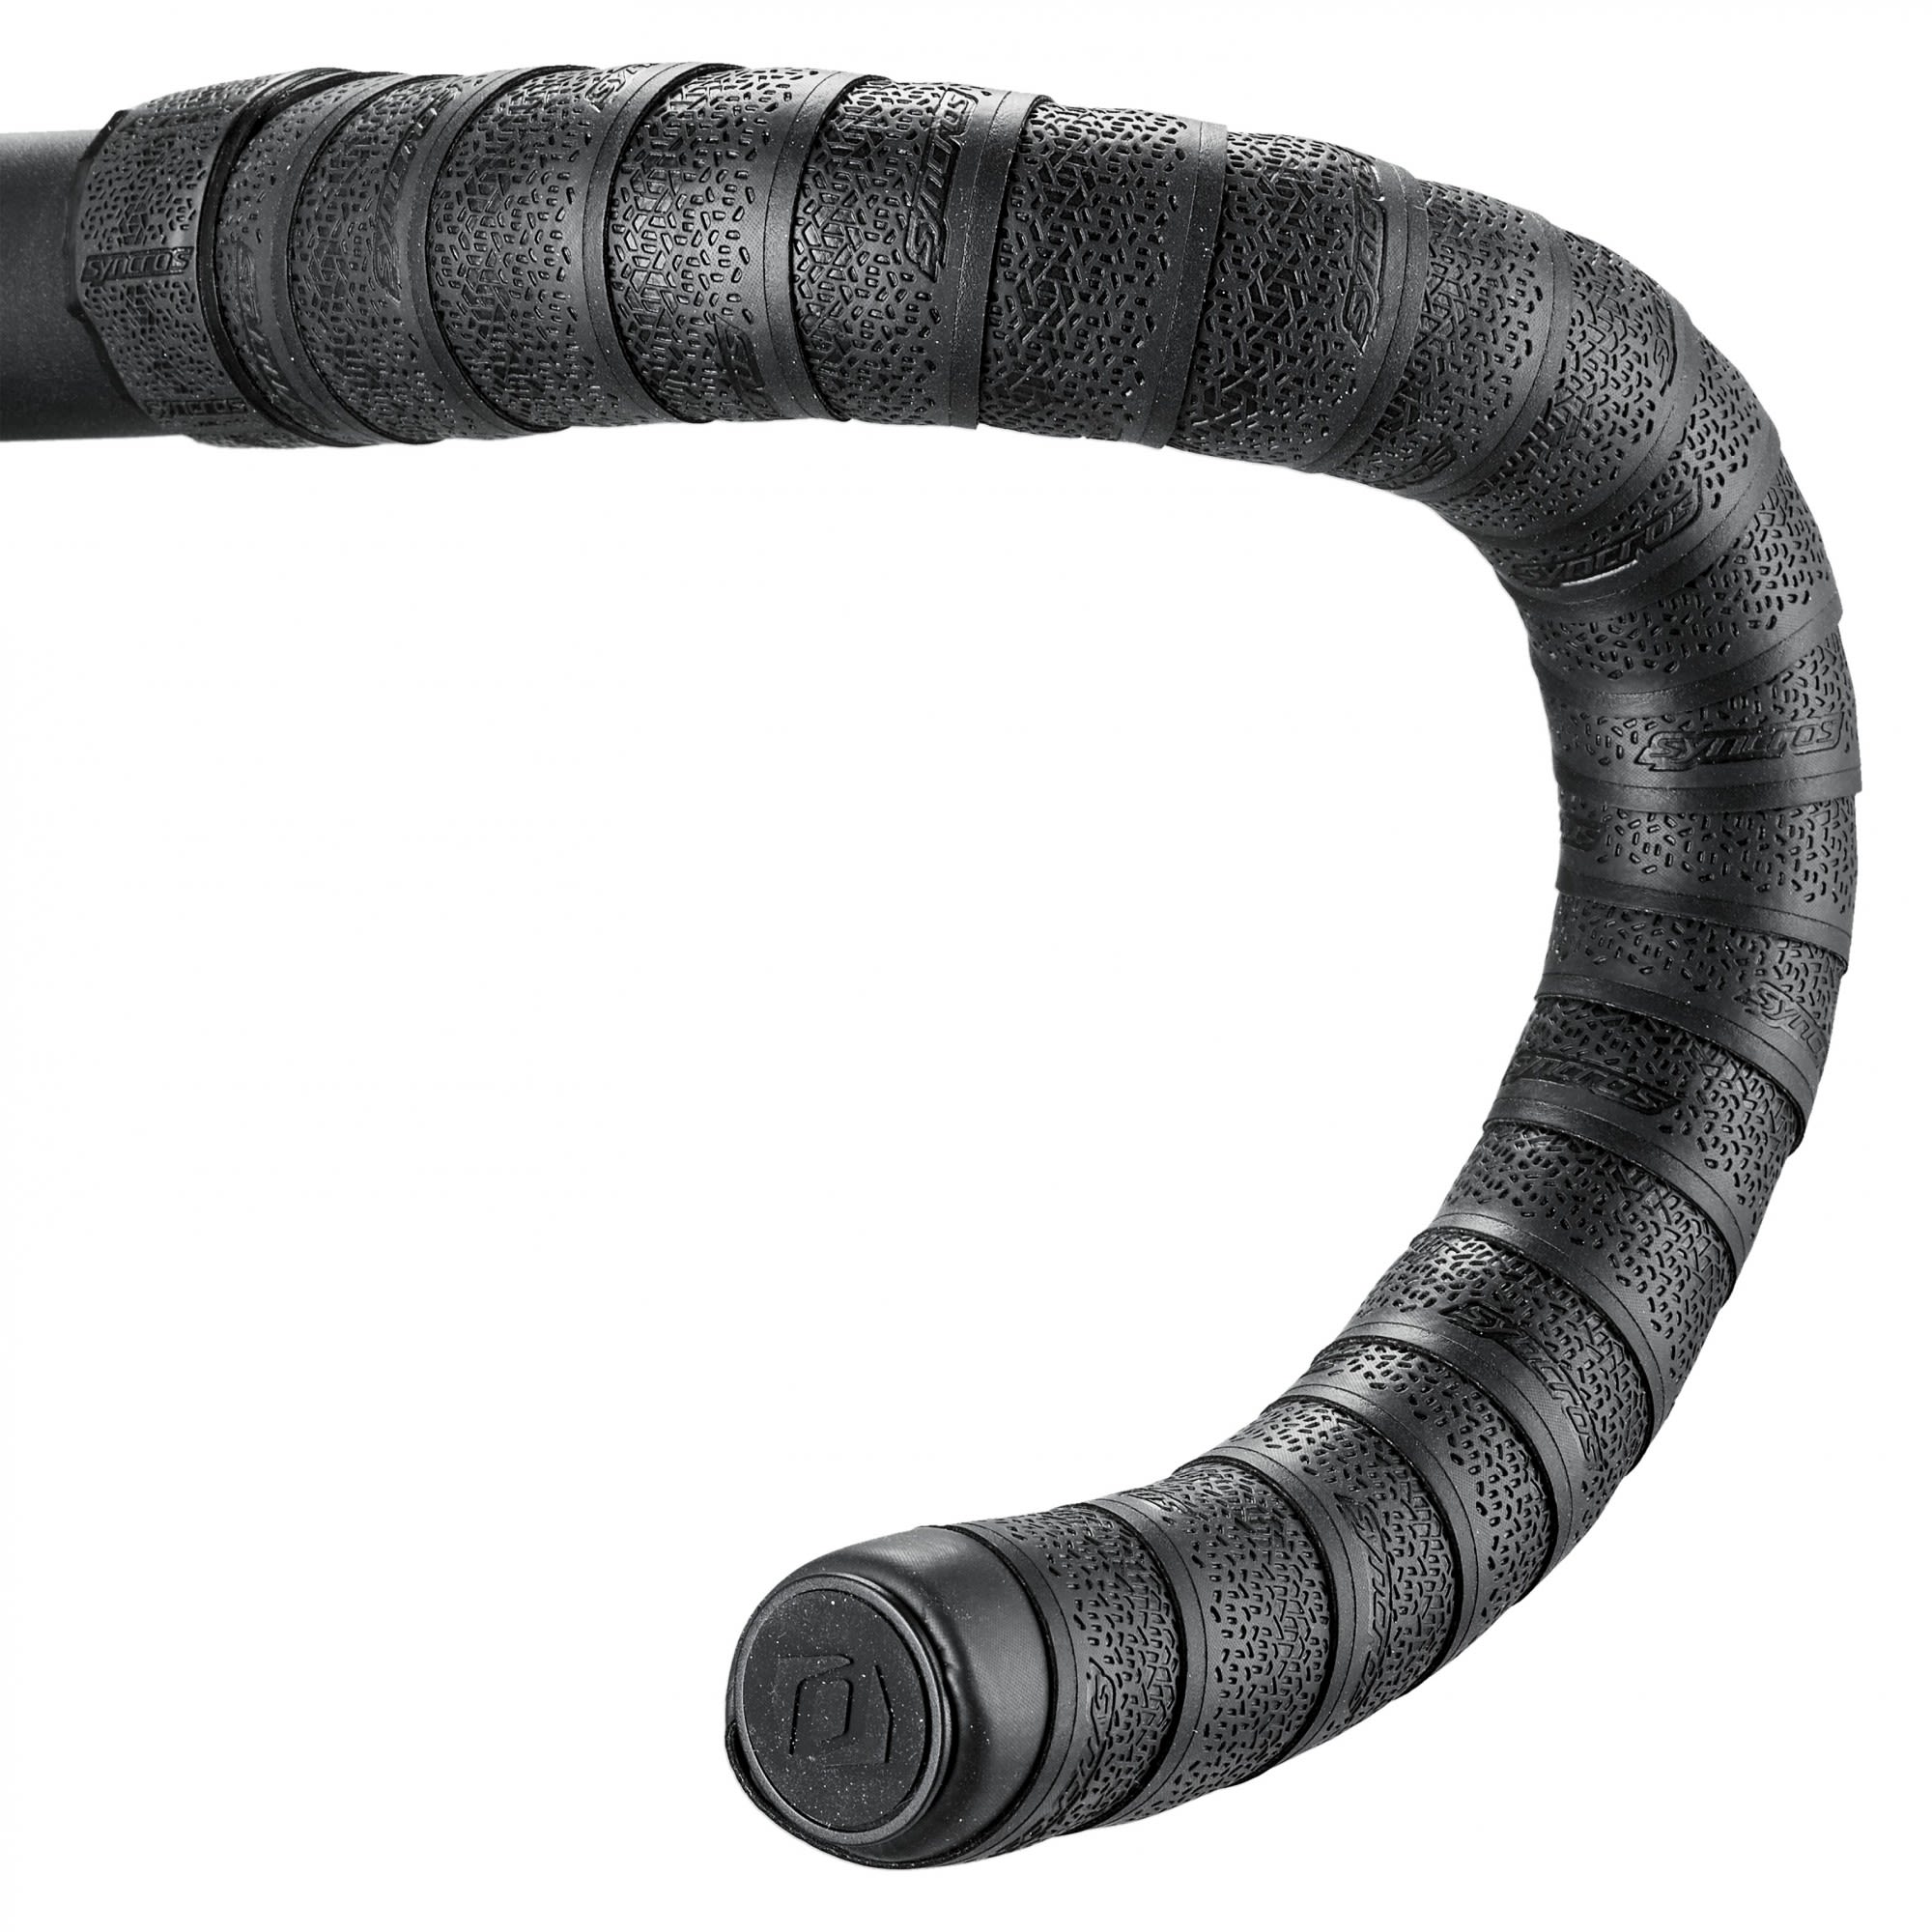 Syncros Extrem Dickes Lenkerband Schwarz- Zubehr- Reparatur und Wartung- Grsse One Size - Farbe Black unter Syncros